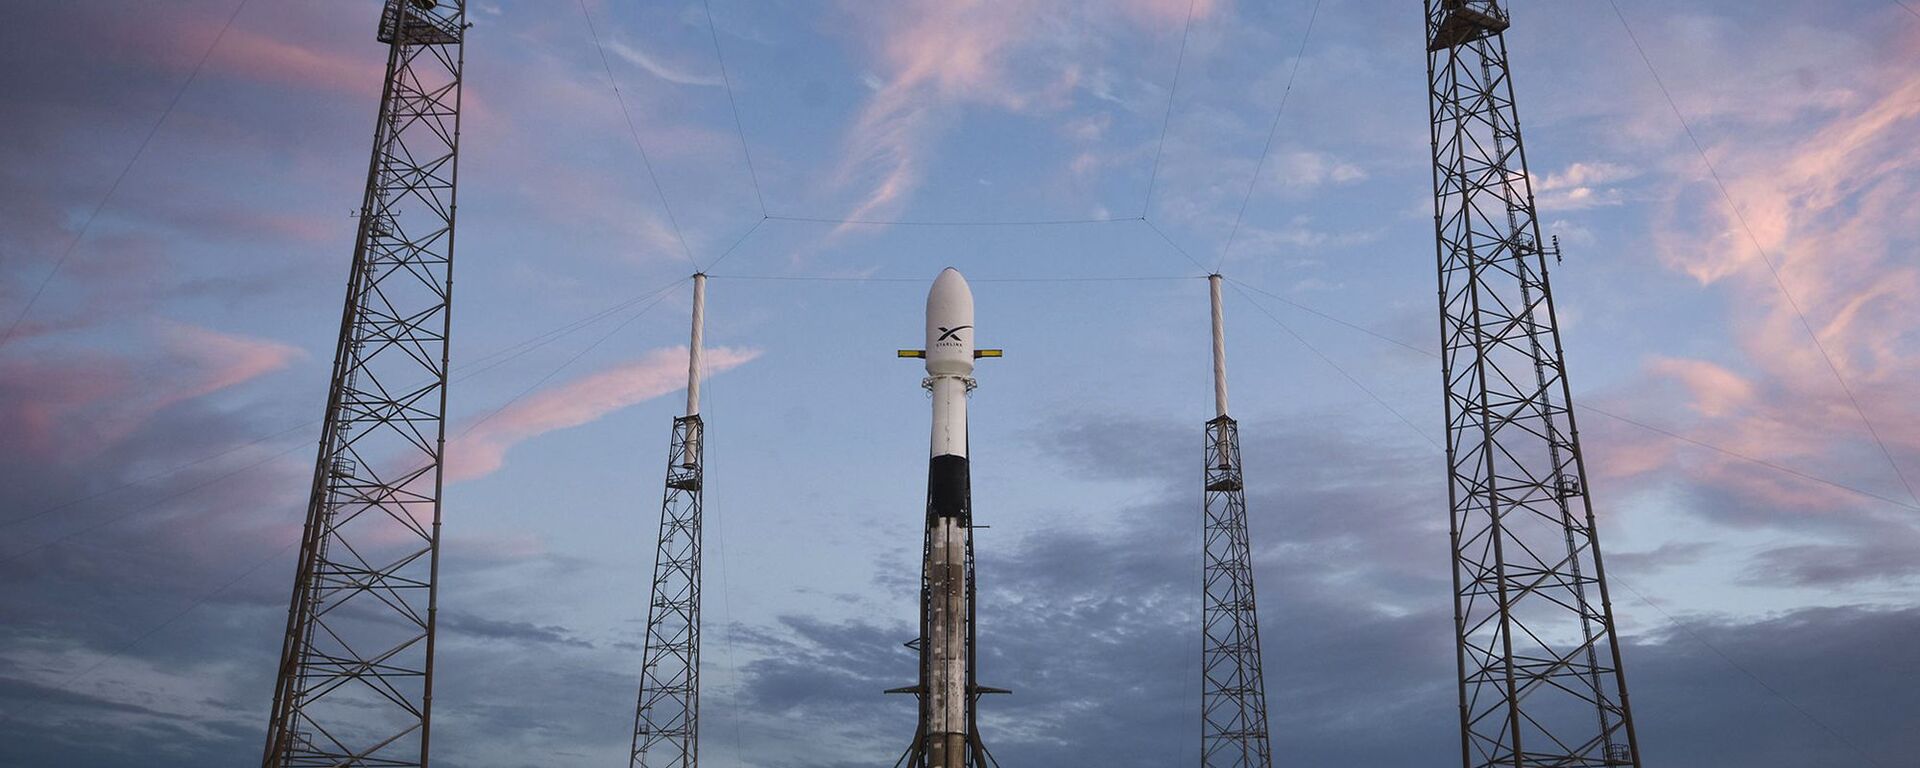 Falcon 9 за день до запланированного запуска 60 спутников Starlink, 14 мая 2019 года - Sputnik Абхазия, 1920, 26.12.2022